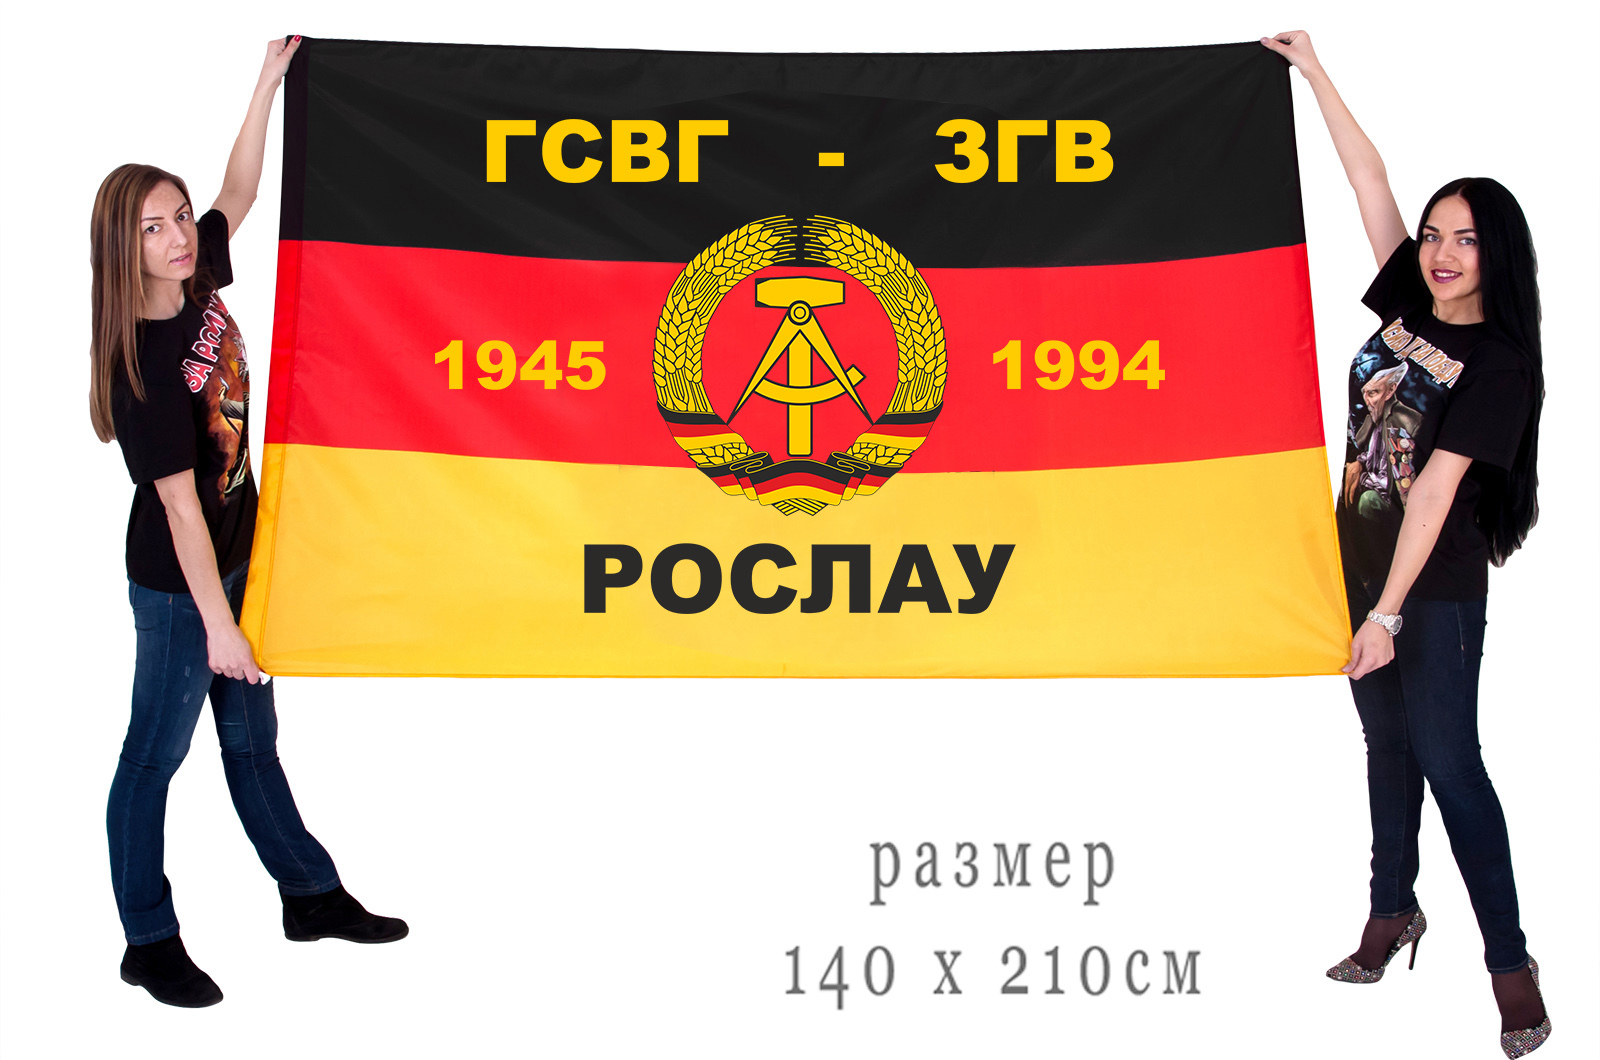 Большой флаг ГСВГ-ЗГВ "Рослау"1945-1994